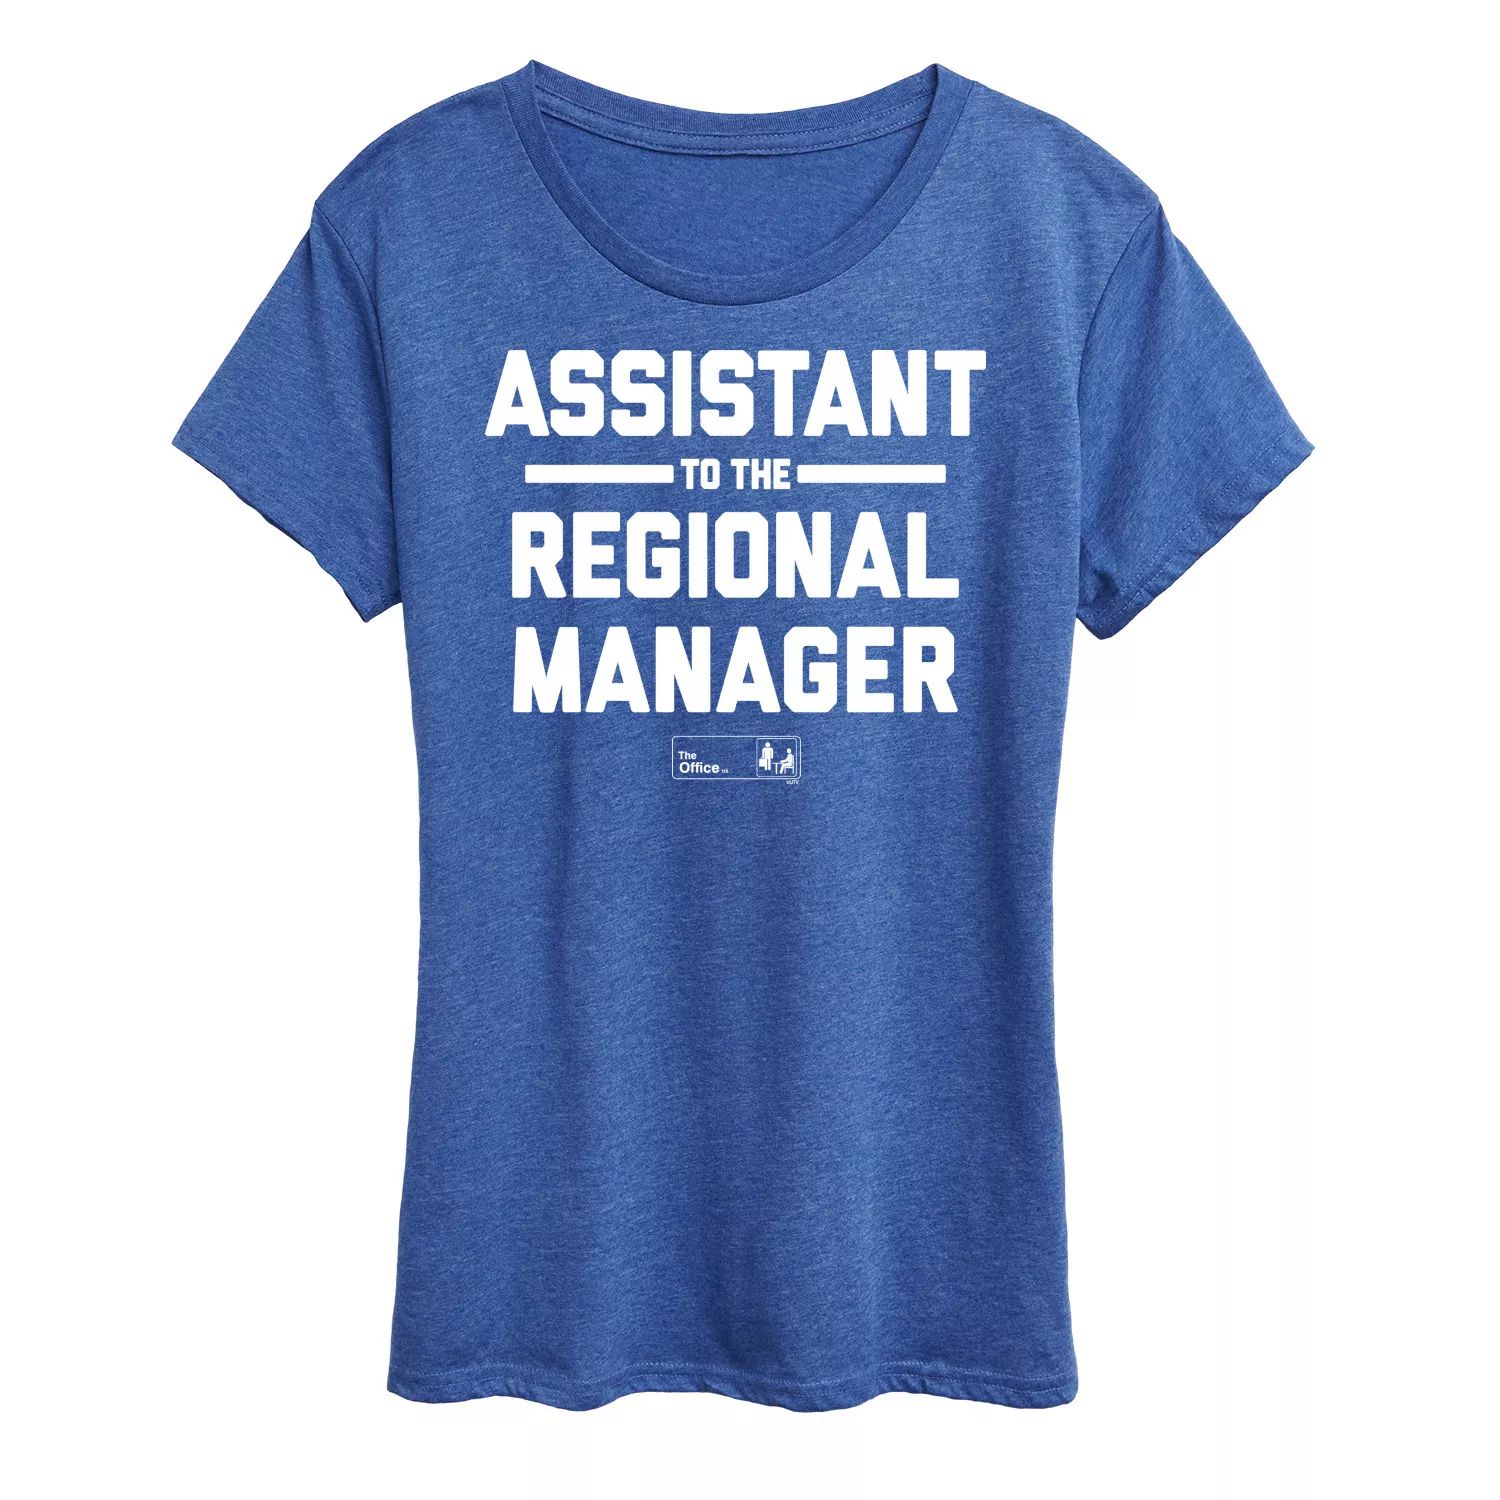 Женская футболка с рисунком «Офис-помощник регионального менеджера» Licensed Character, синий